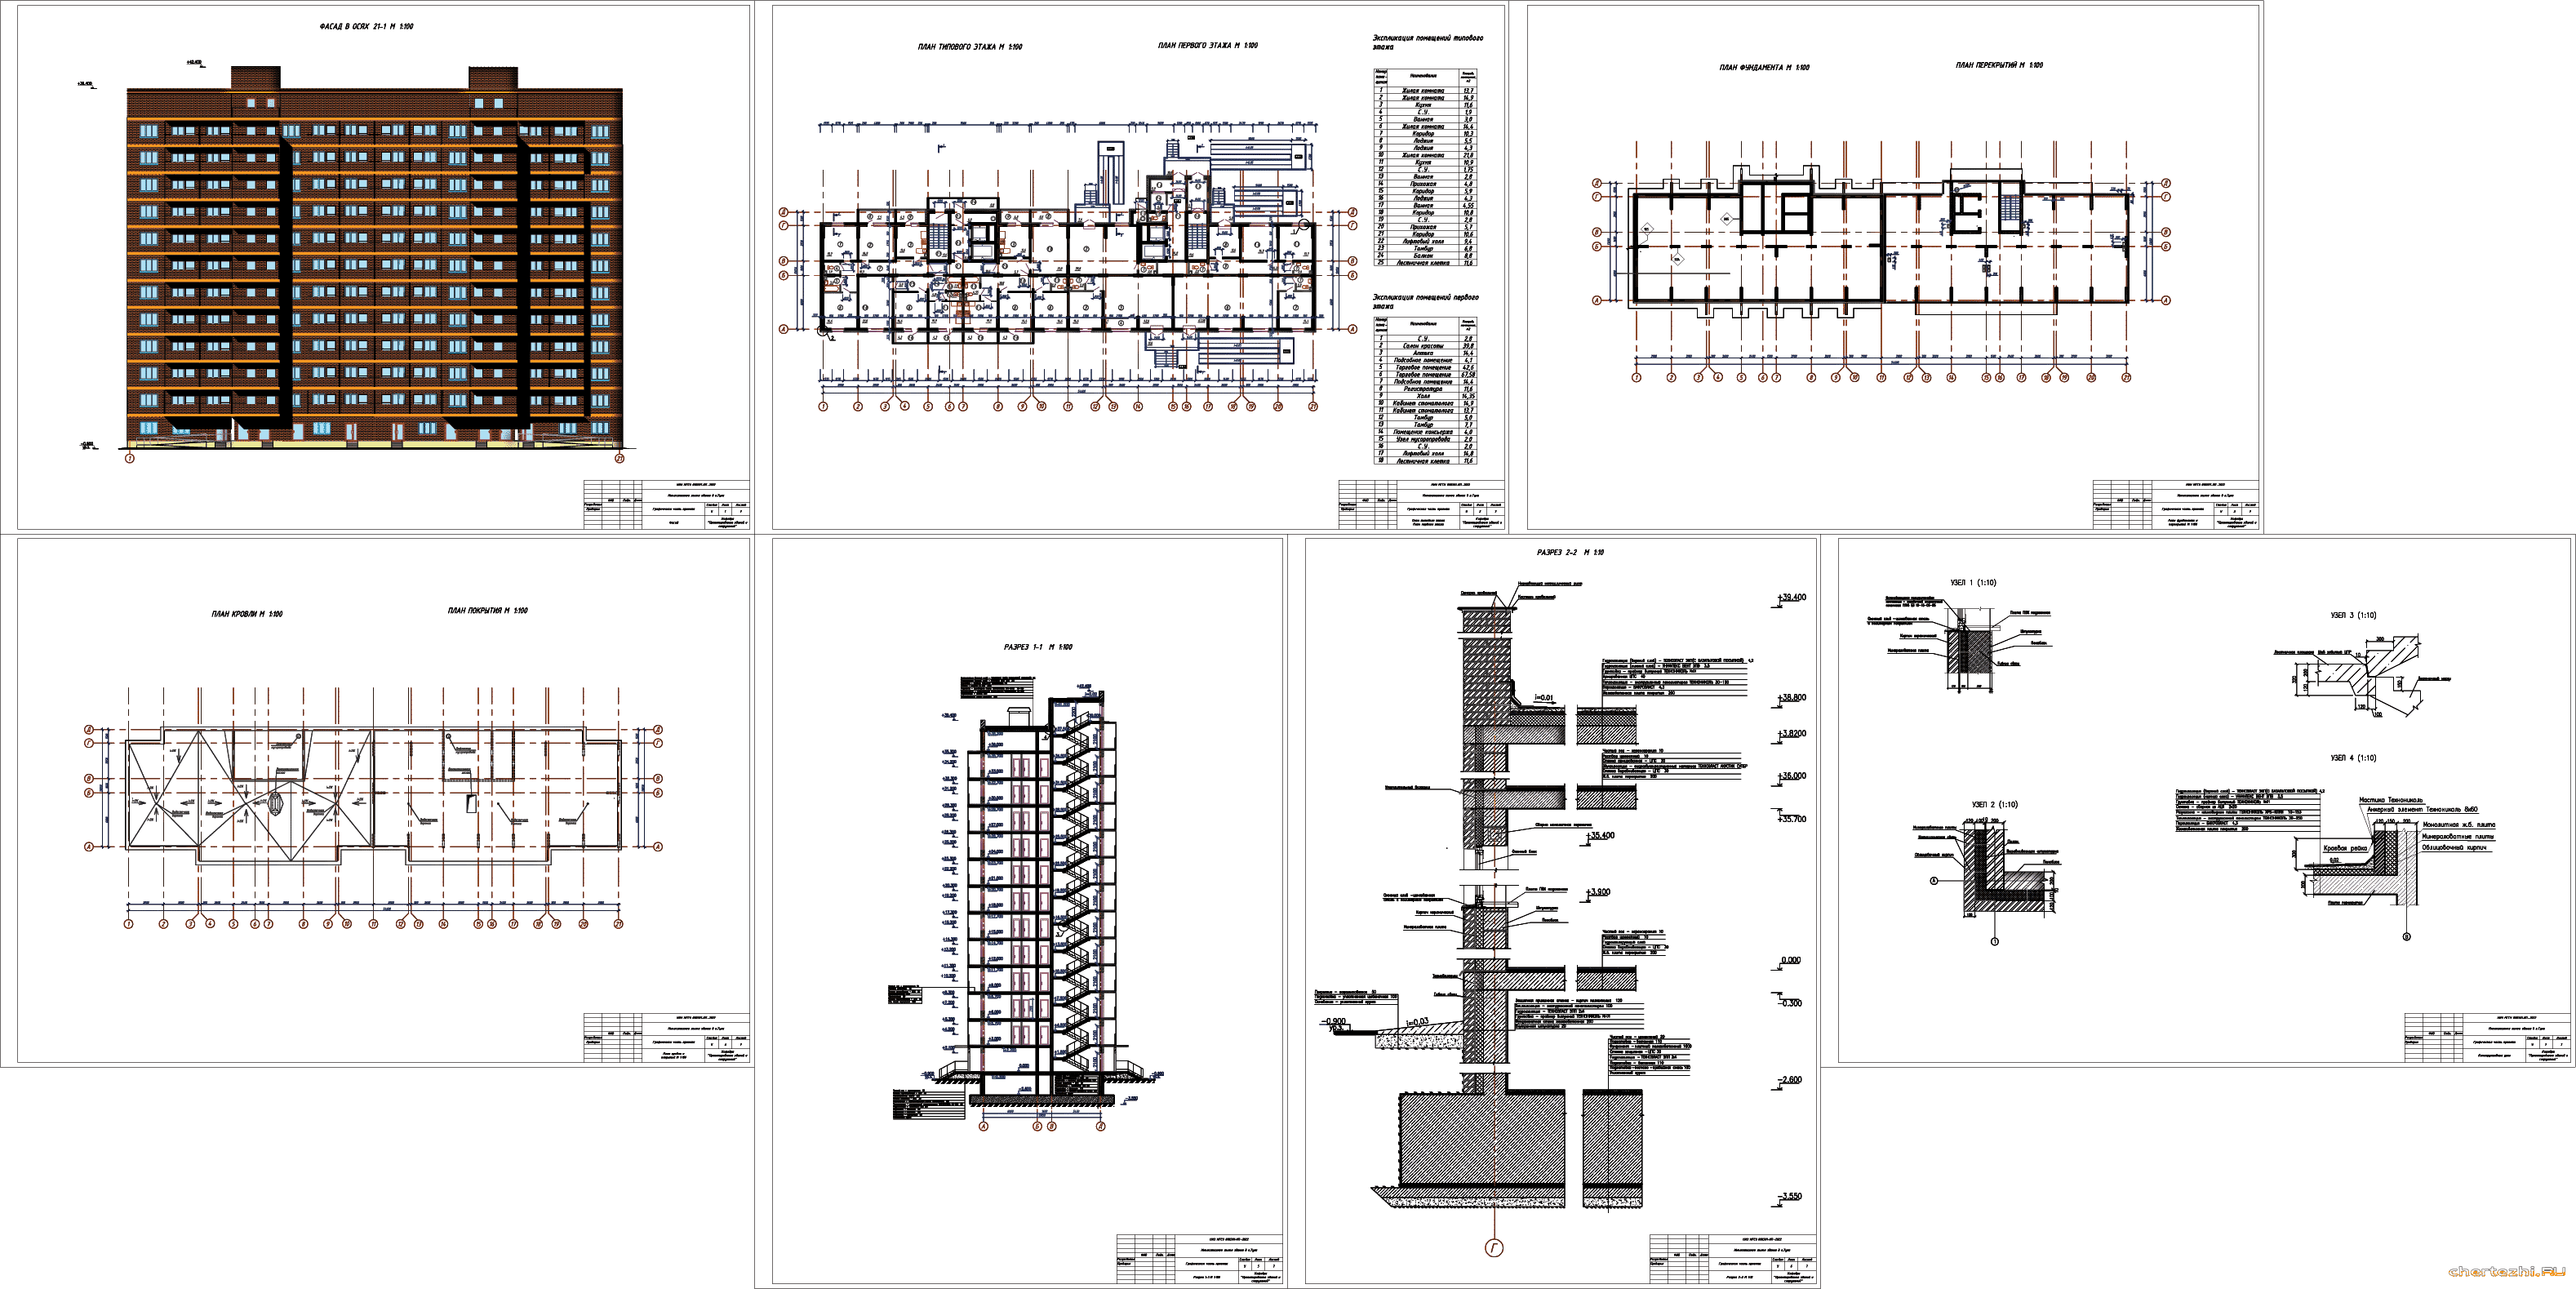 Курсовой проект - 12-ти этажный жилой дом 54,60 х 13,05 м в г. Тула